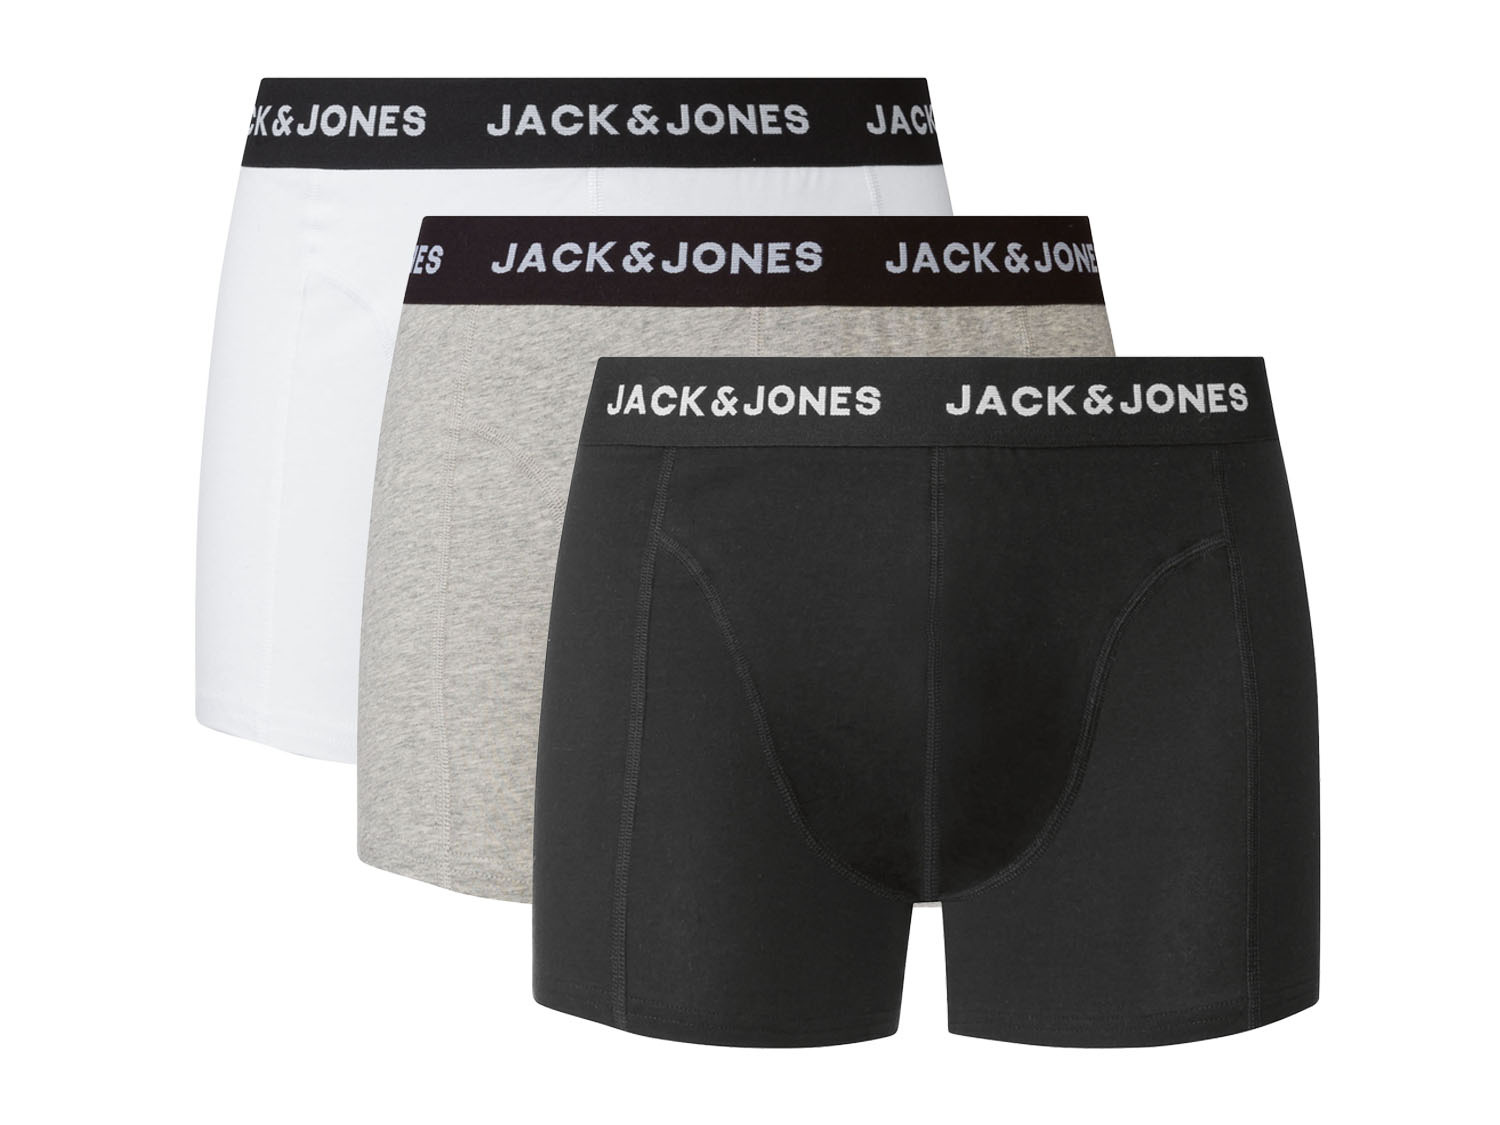 vee koepel explosie Jack & Jones 3 heren boxershorts online kopen | LIDL